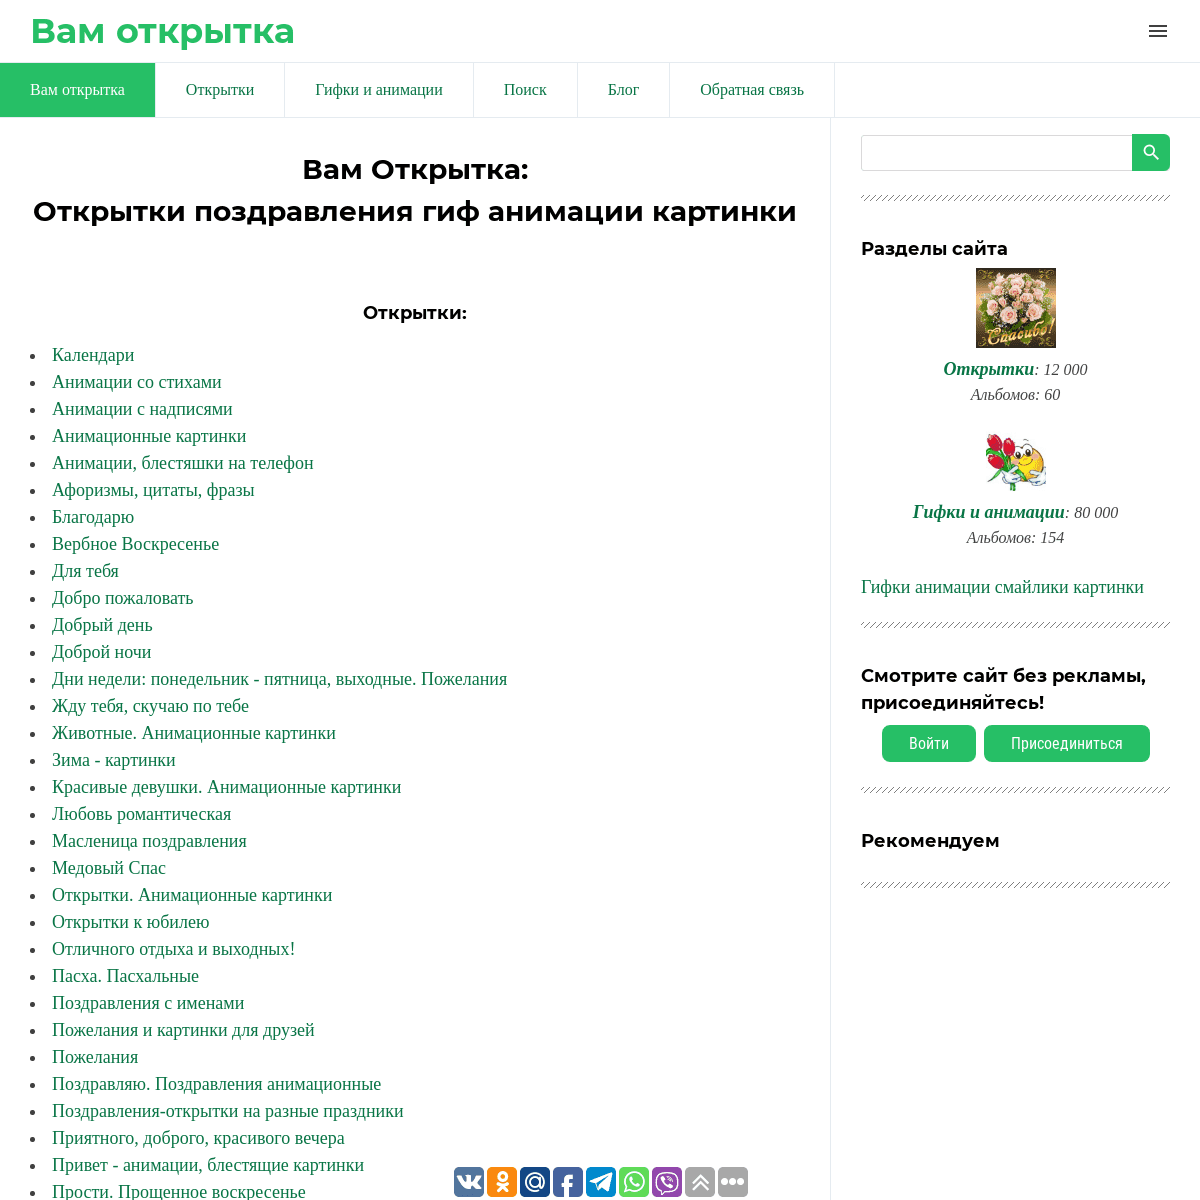 A complete backup of https://vamotkrytka.ru